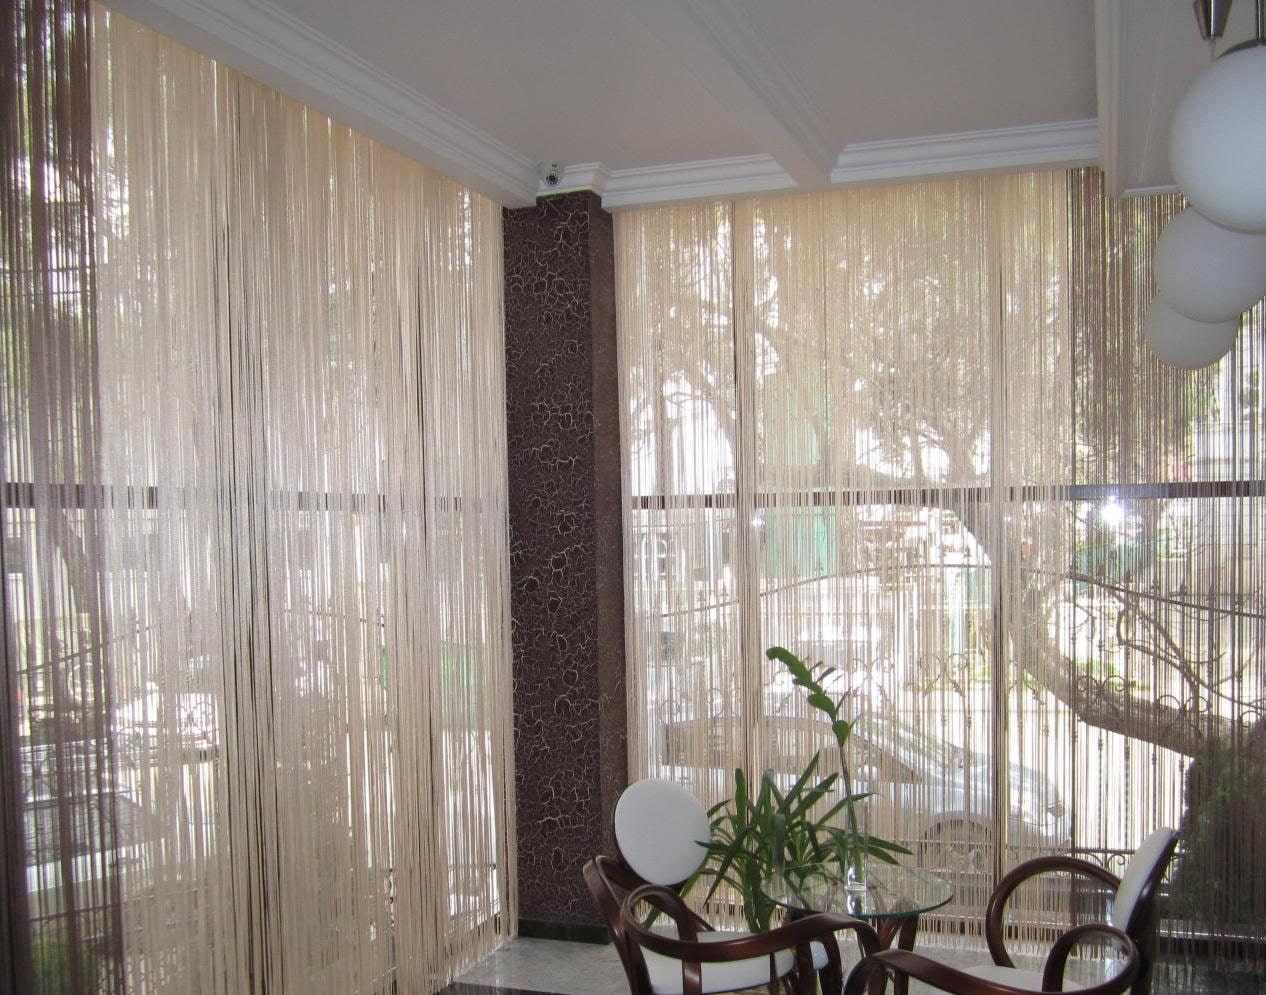 gardiner på balkongen interiör alternativ